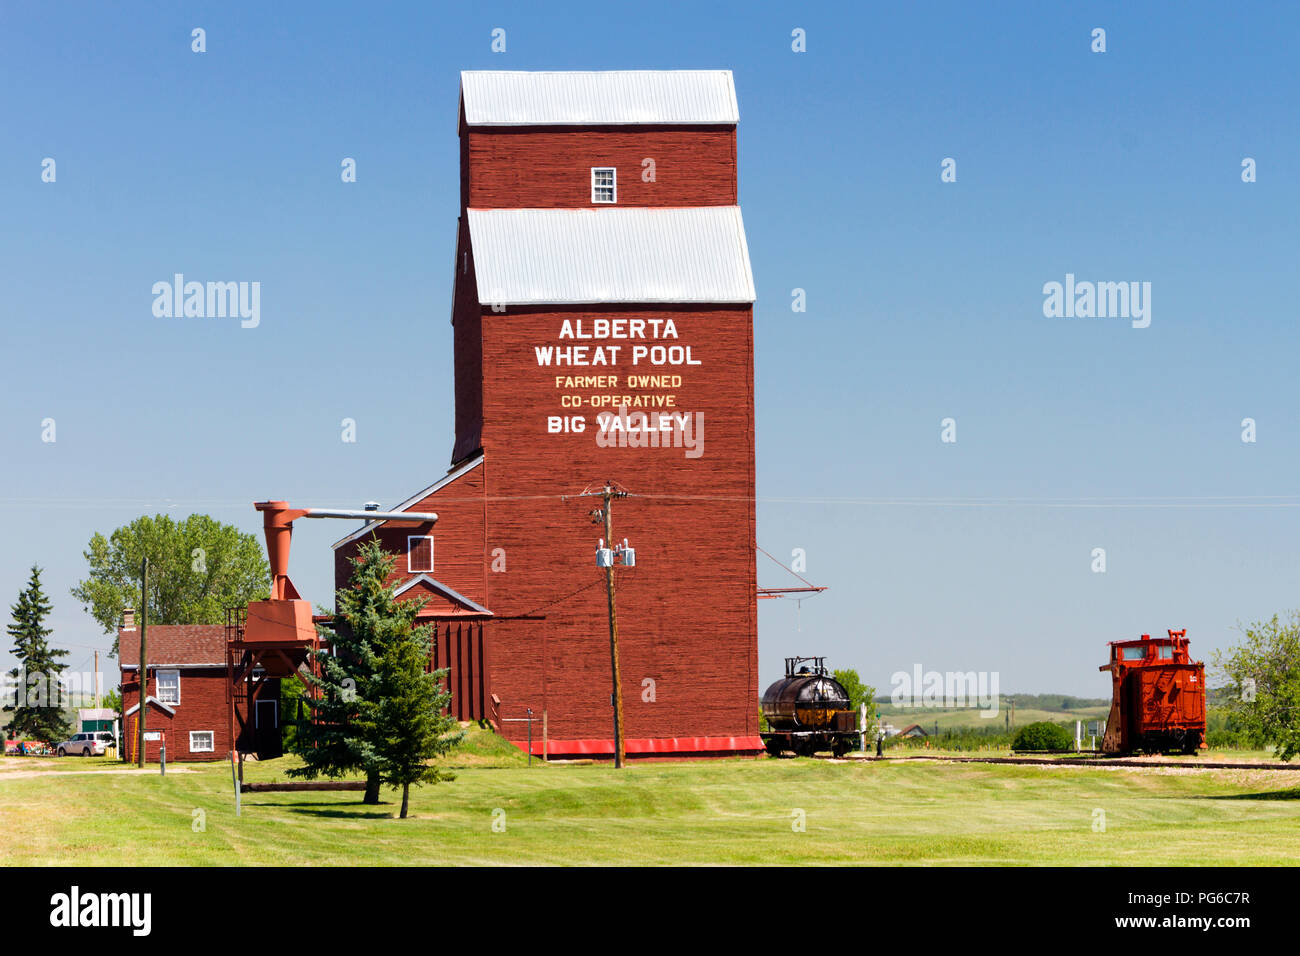 Juli 13, 2018 - Big Valley, Alberta, Kanada: altes verwittertes Holz Getreidesilos in der kleinen kanadischen Prairie Stadt Big Valley, Alberta, Kanada. Stockfoto